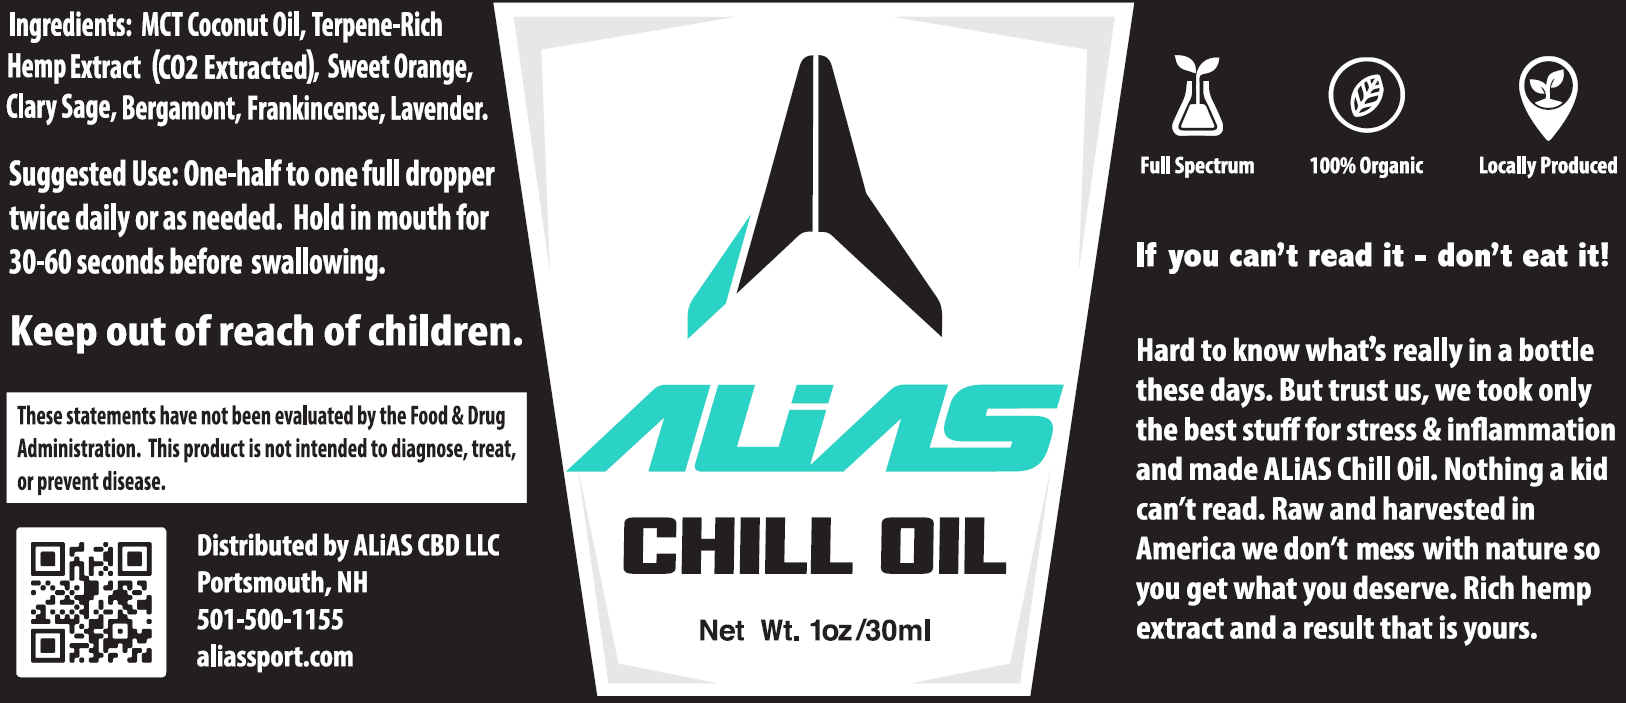 ALiAS Chill Oil